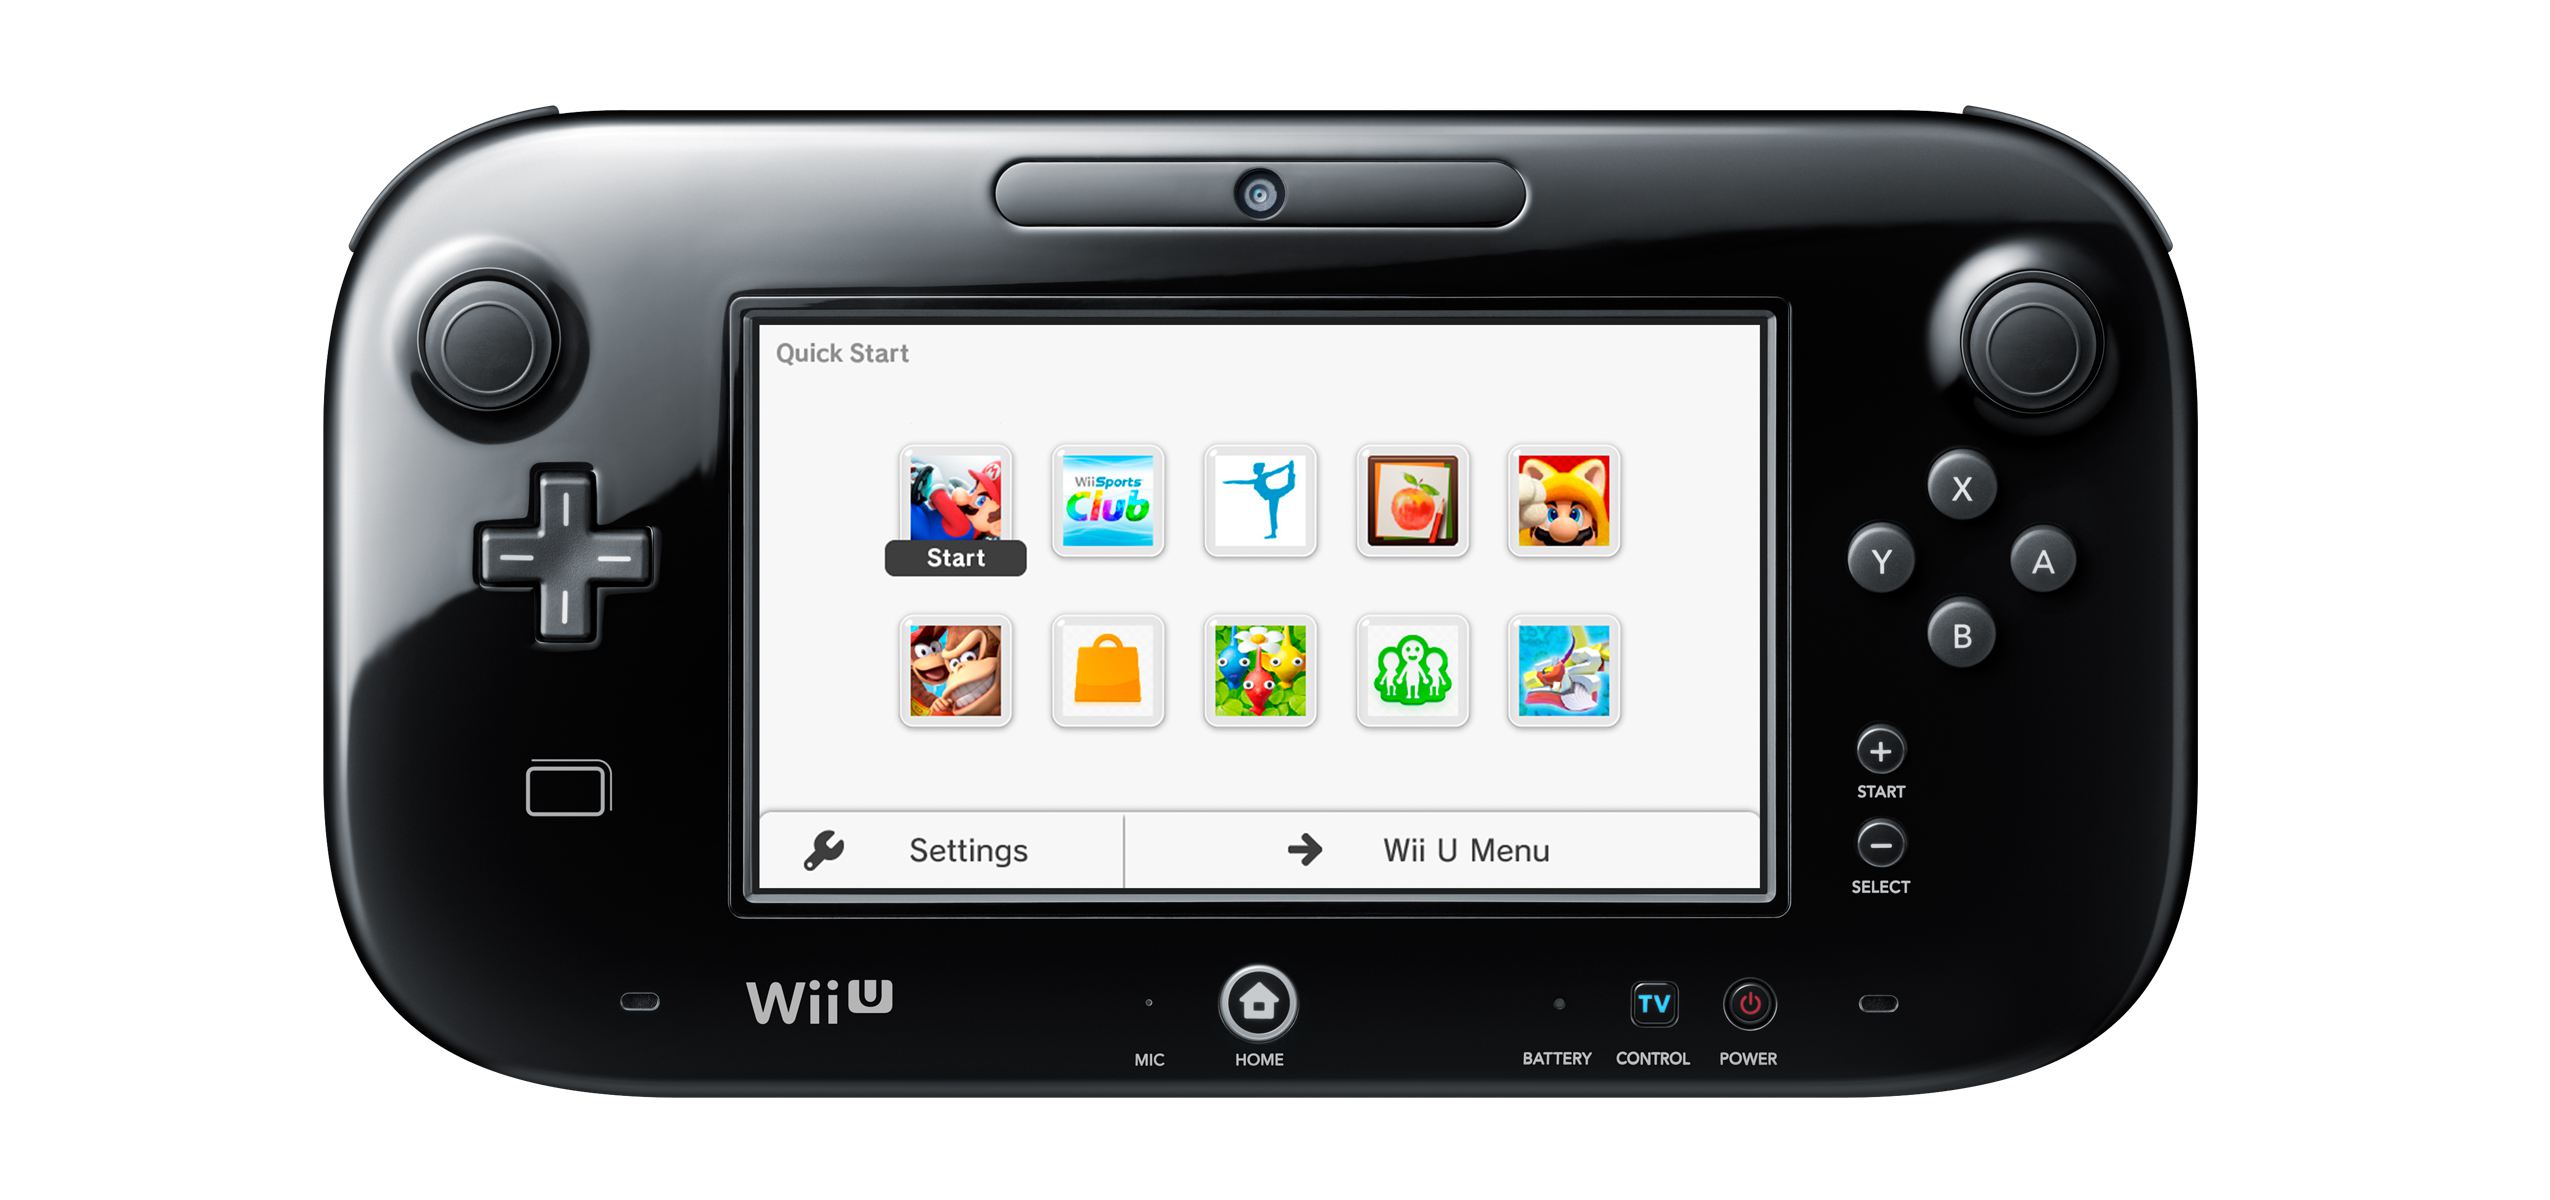 Menu de início rápido do gamepad Wii U